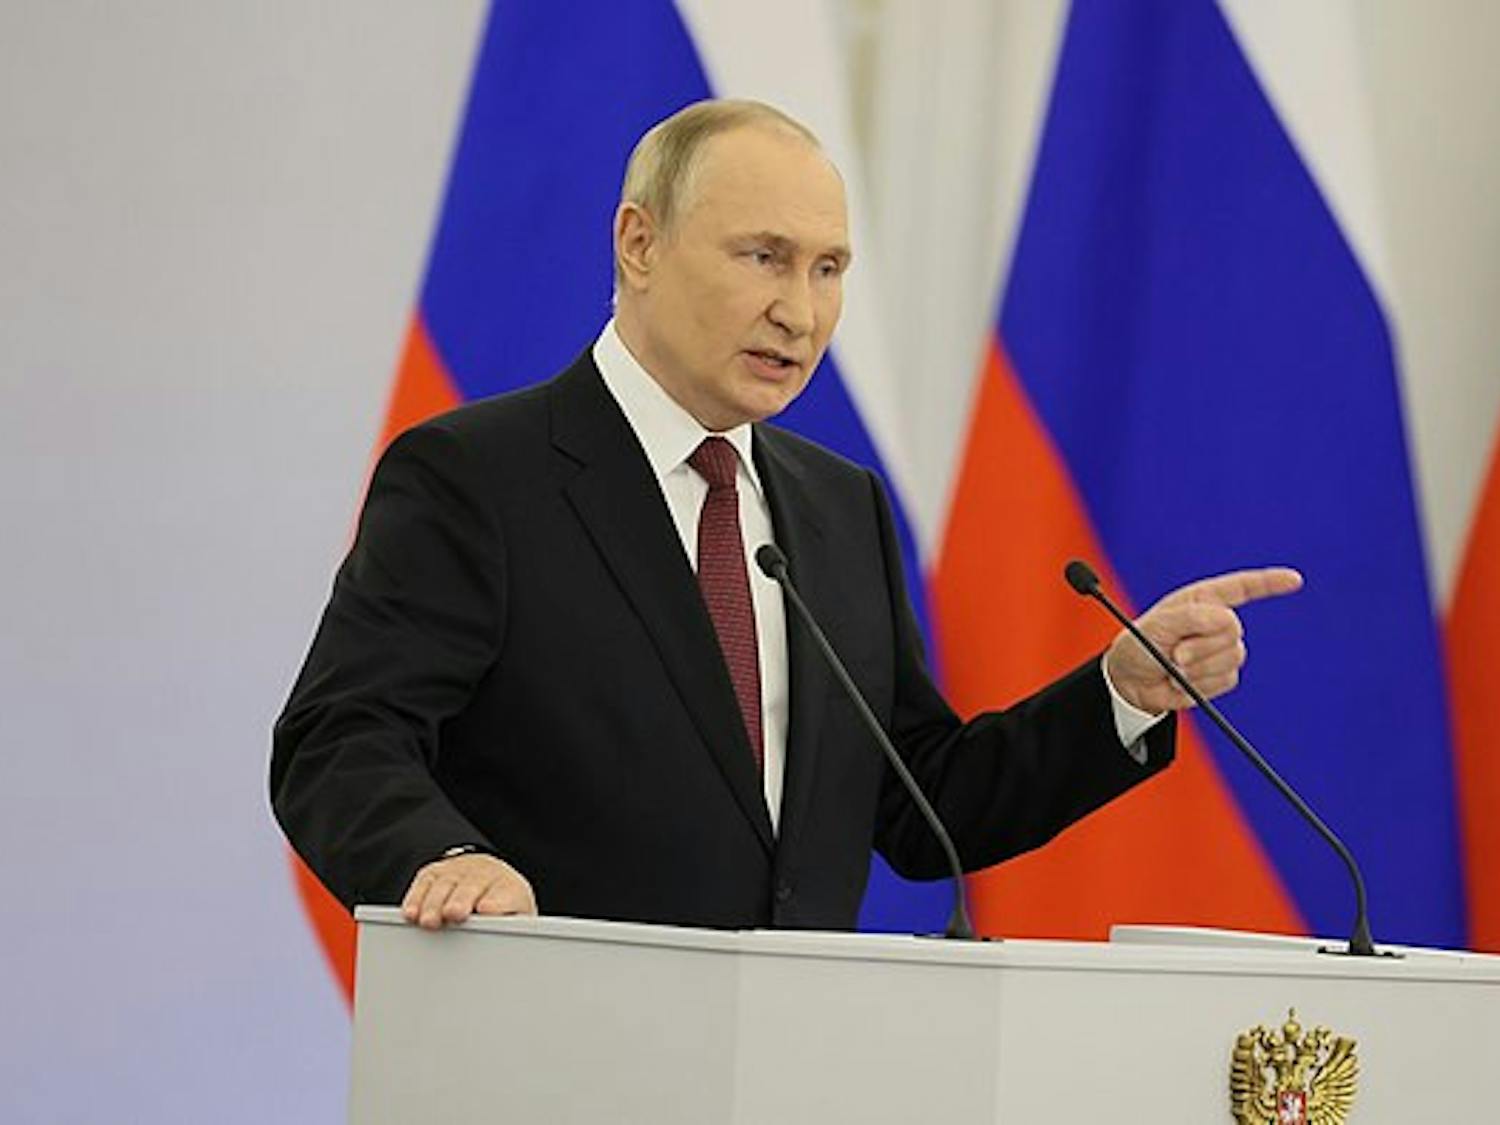 Vladimir_Putin_2022_Annexation_Speech